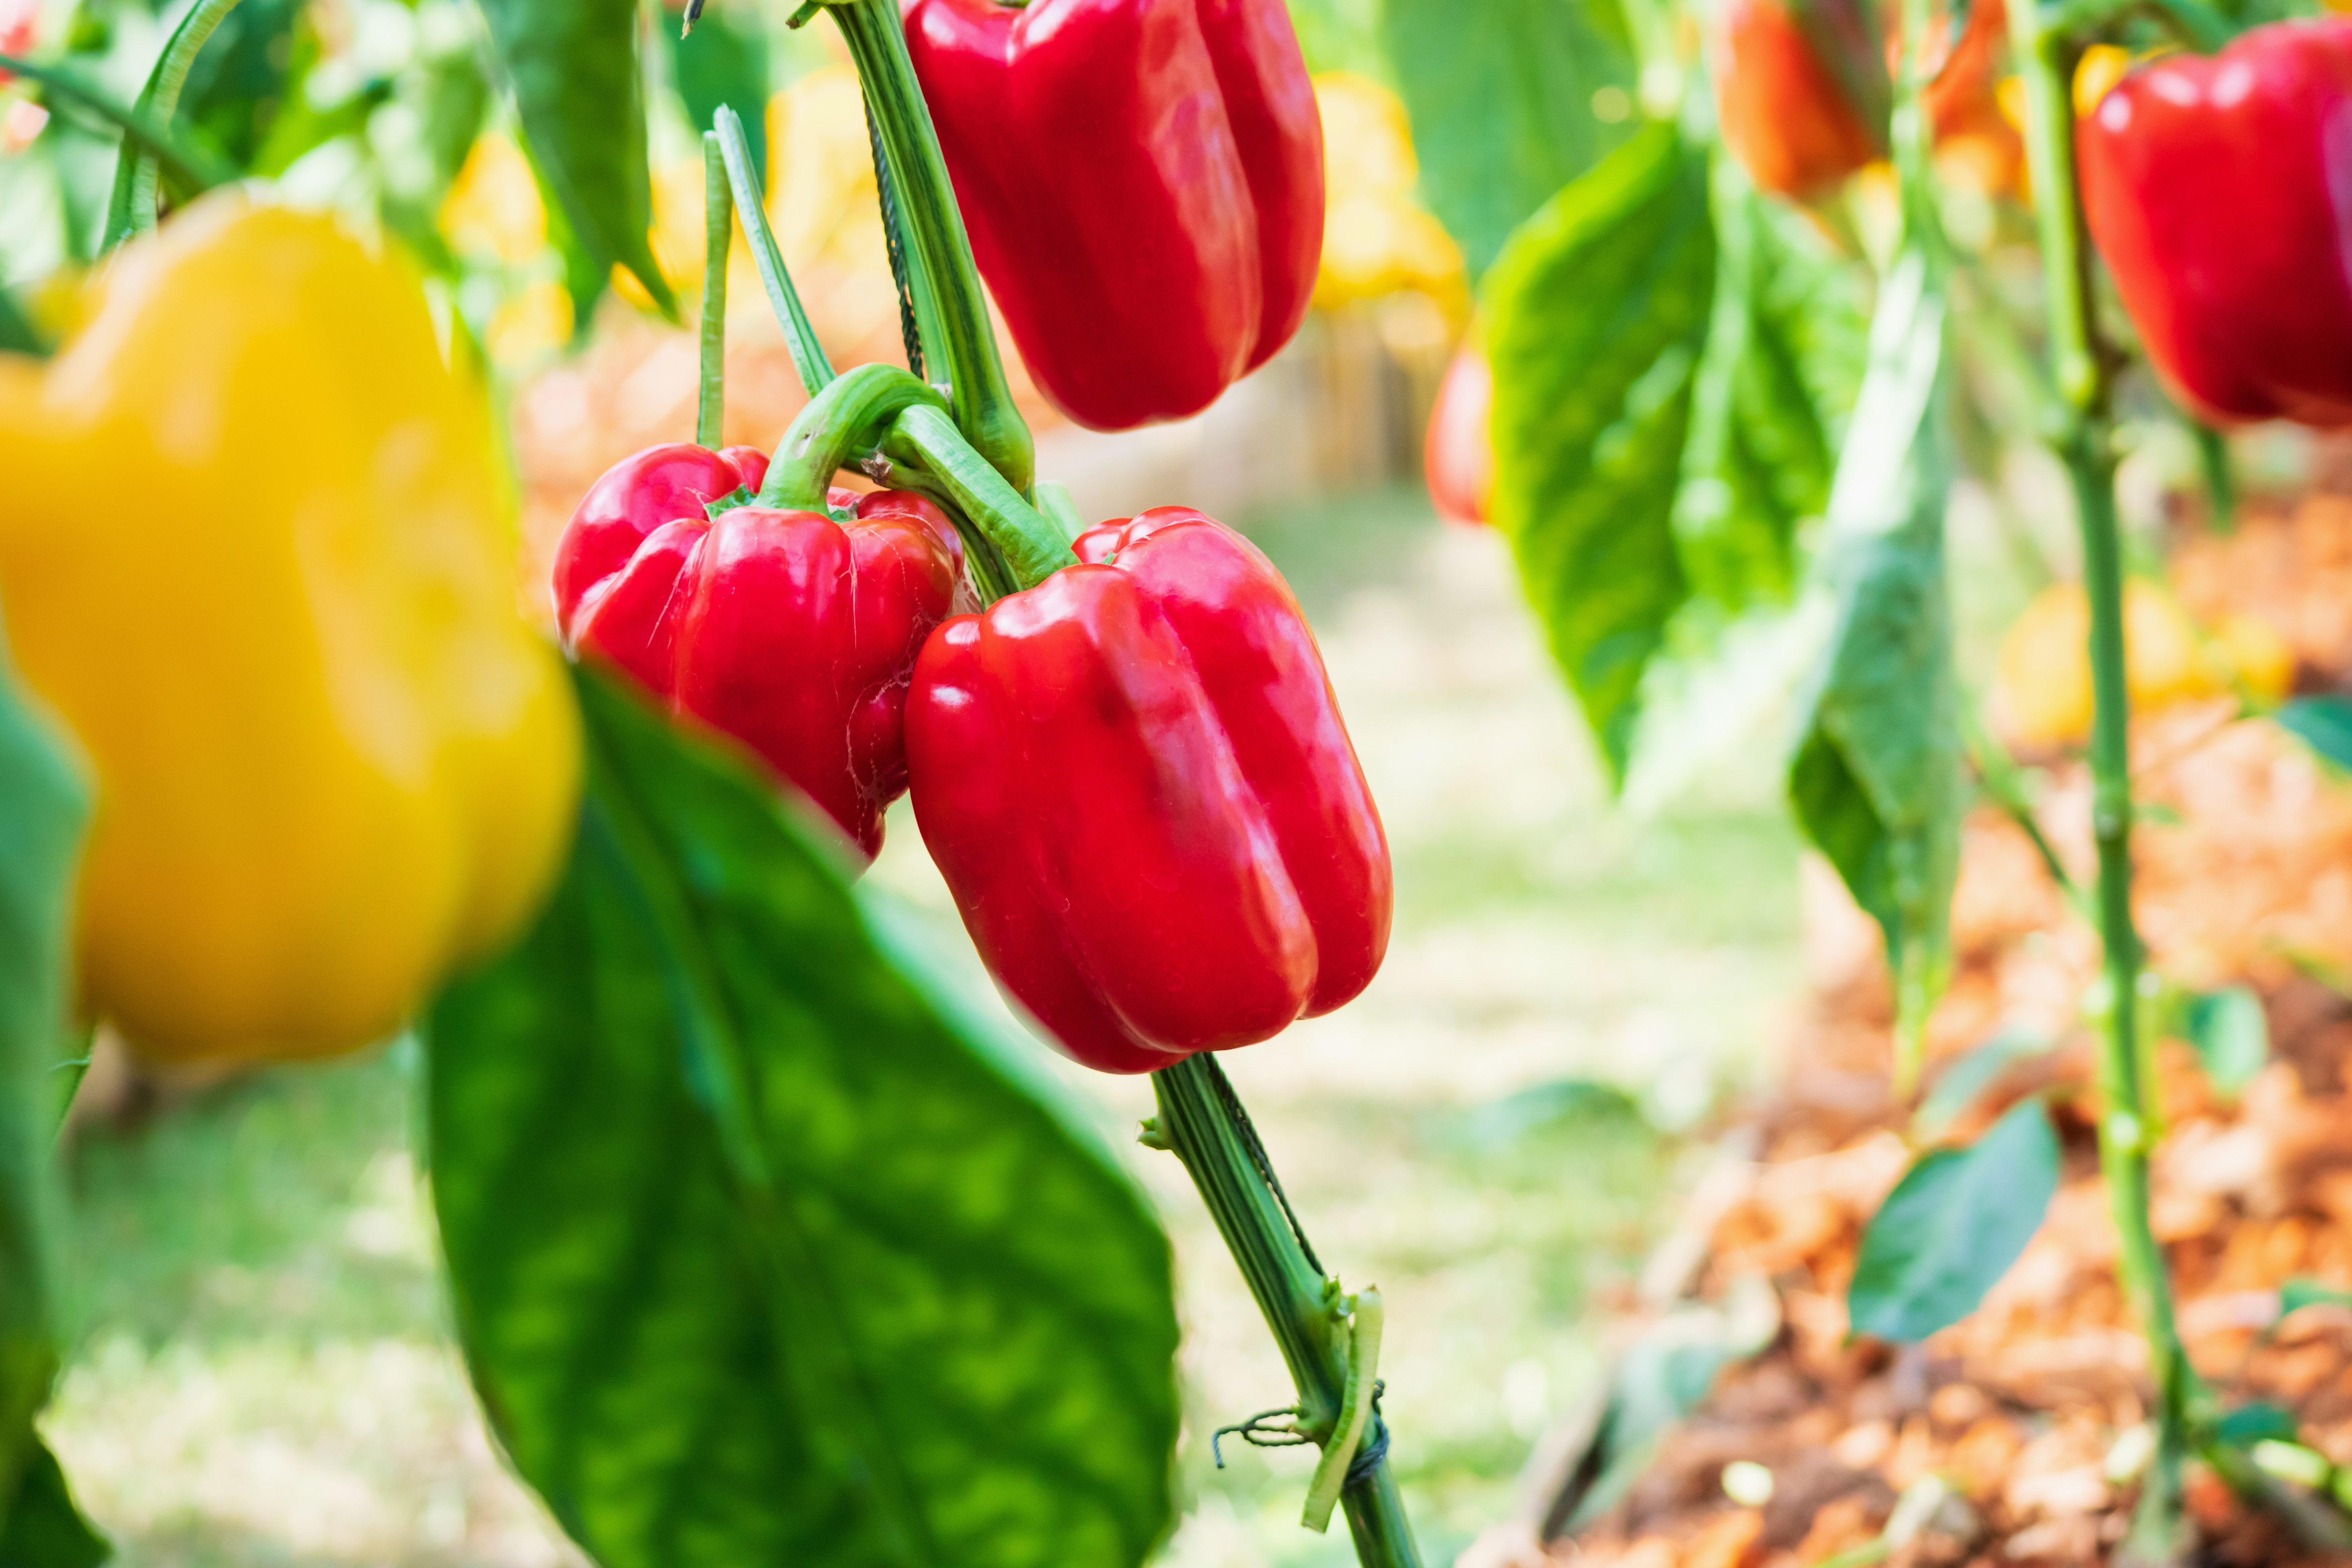 Coltivare peperoni, una guida utile per non sbagliare